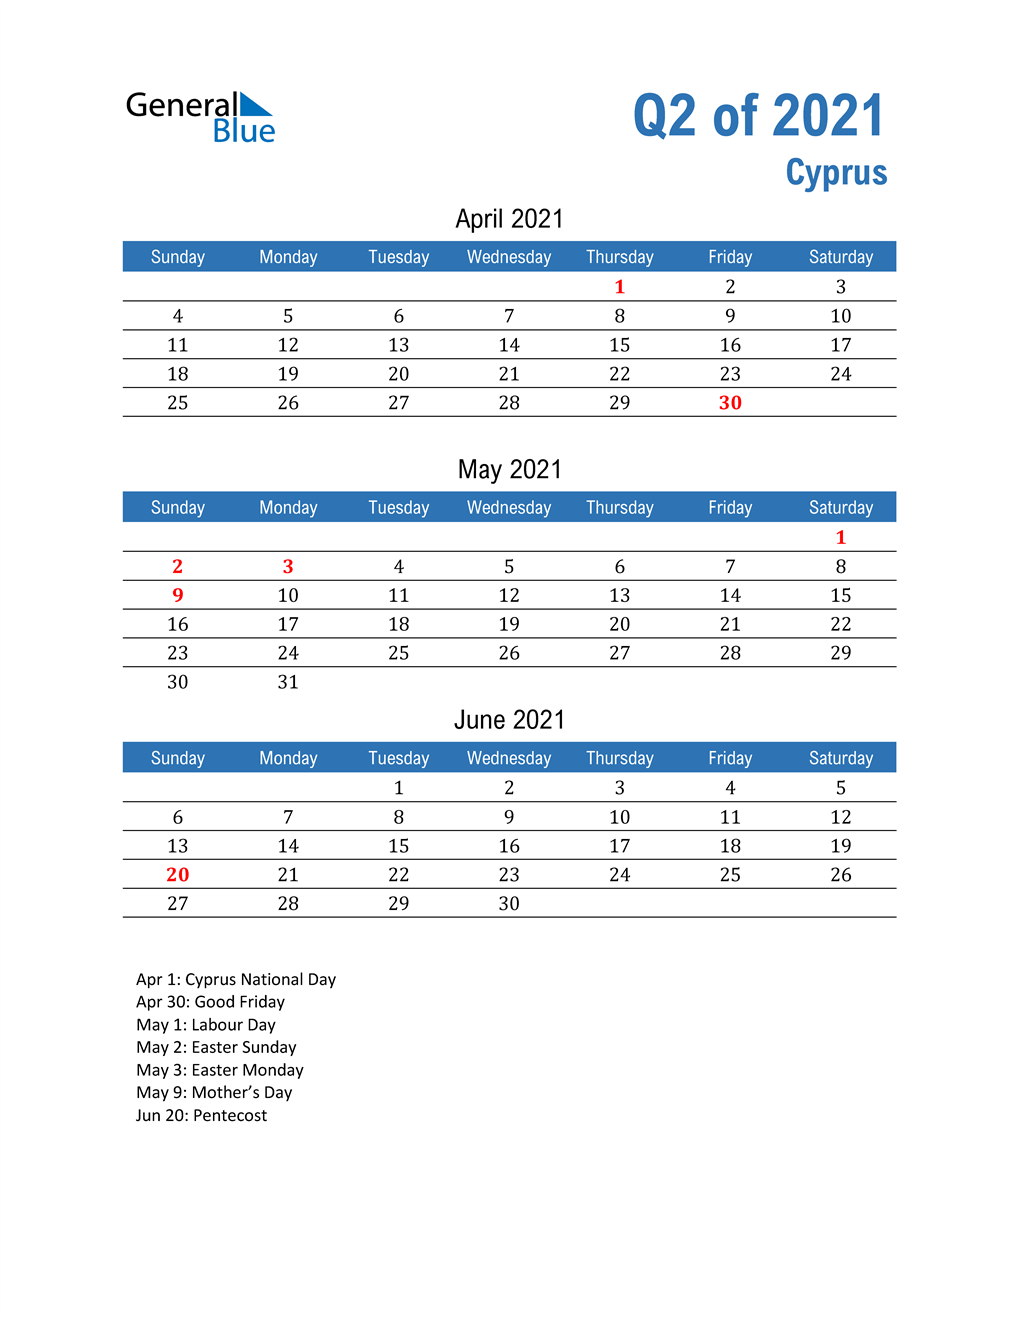  Cyprus 2021 Quarterly Calendar 